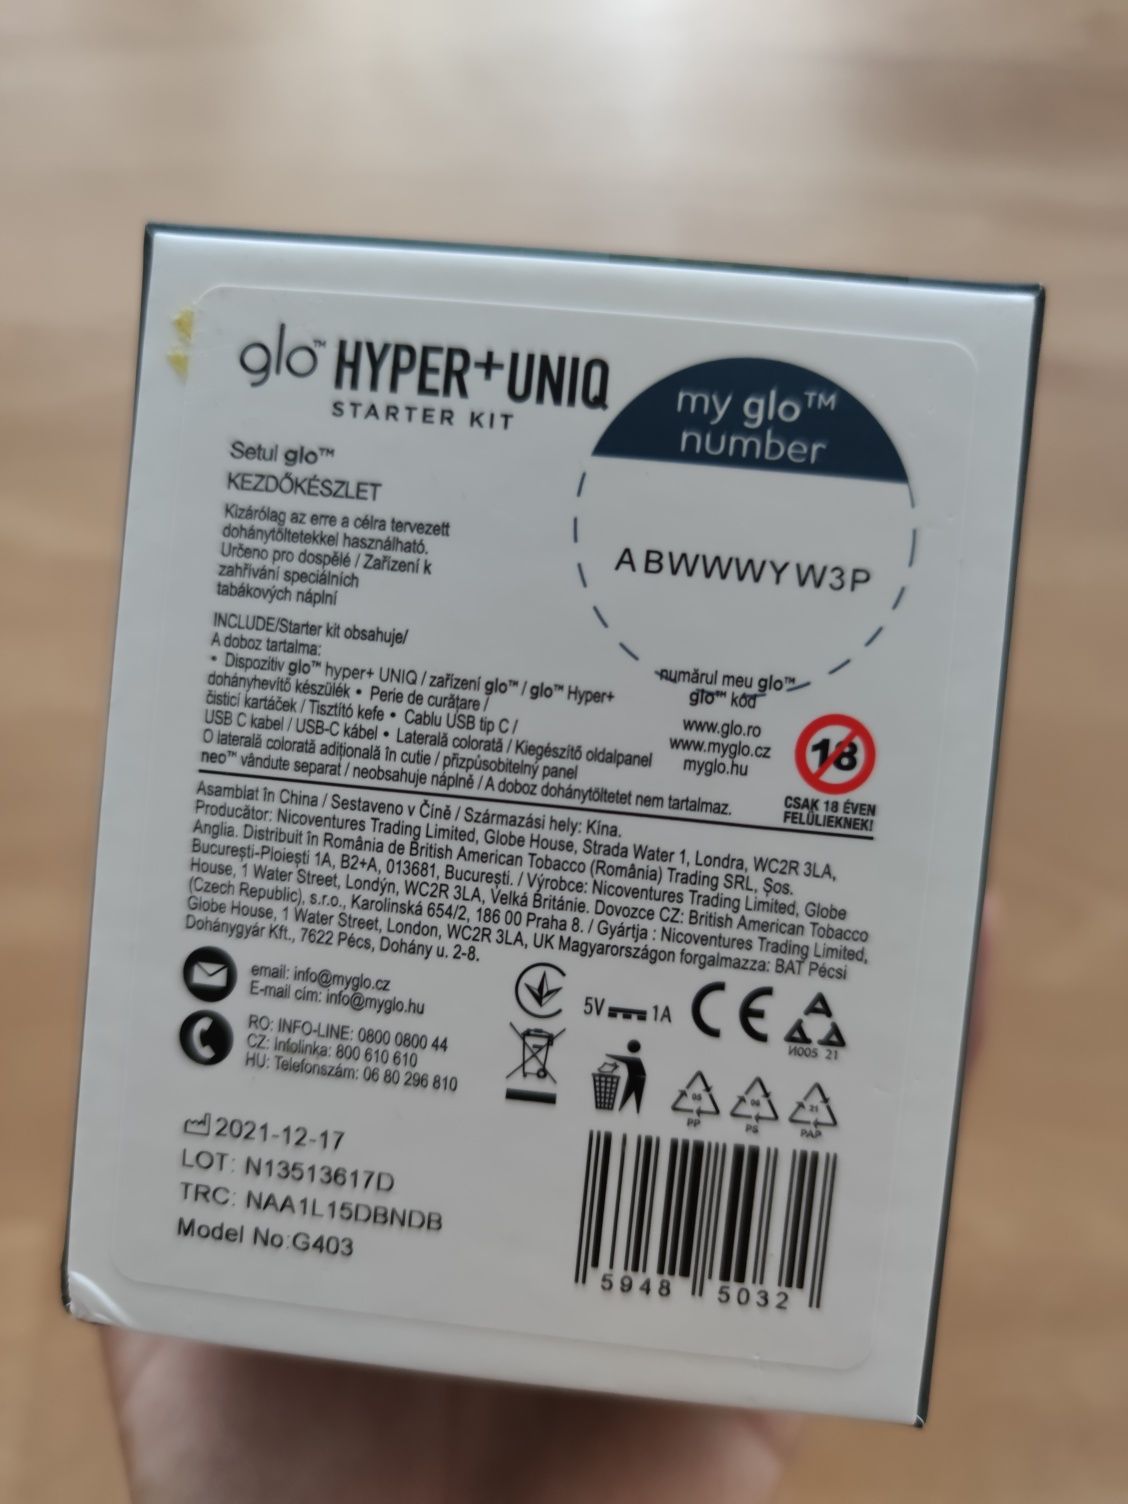 Glo Hyper + Uniq